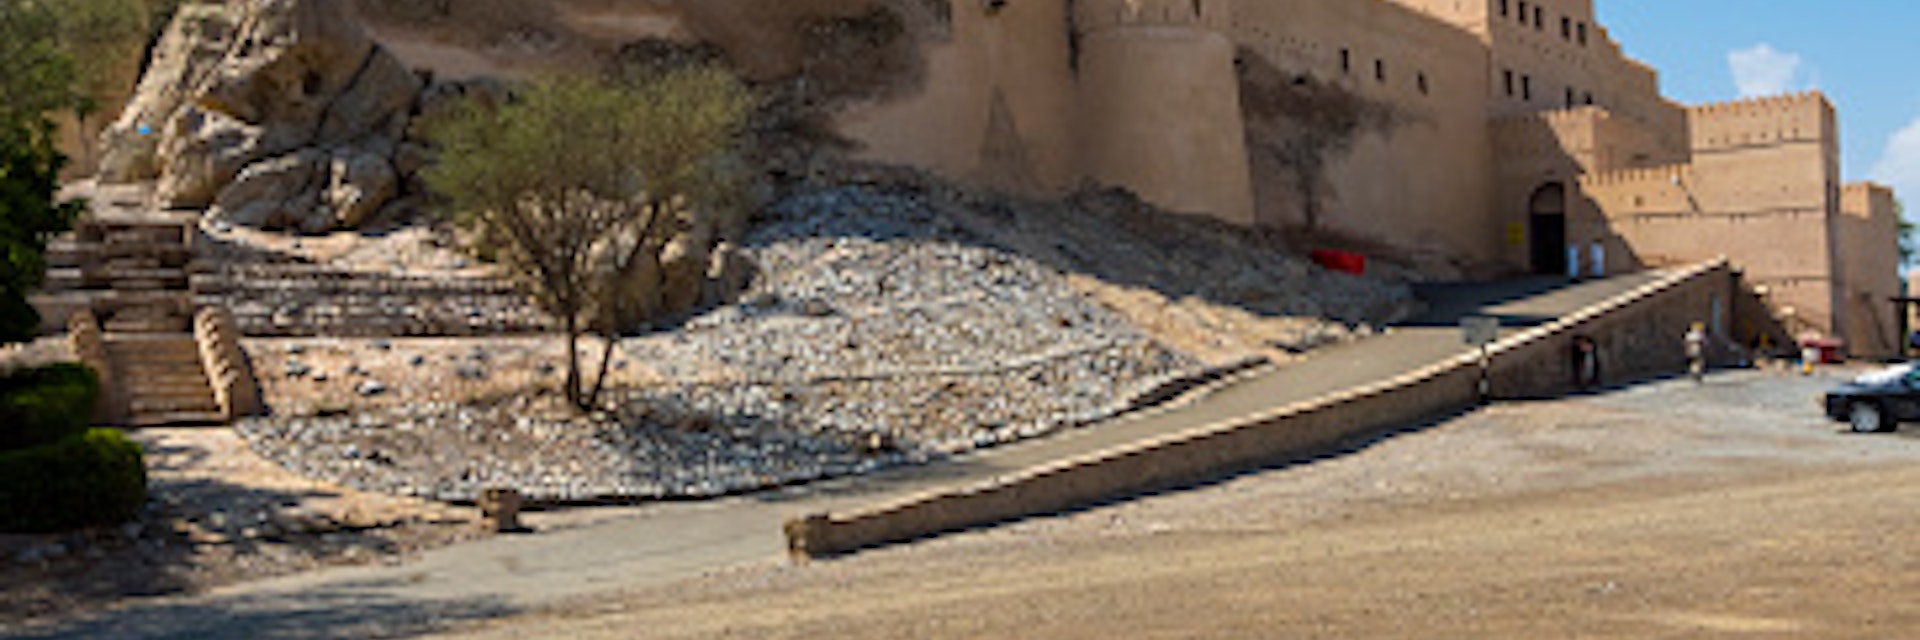 Oman, Nachl, Fort Nakhl